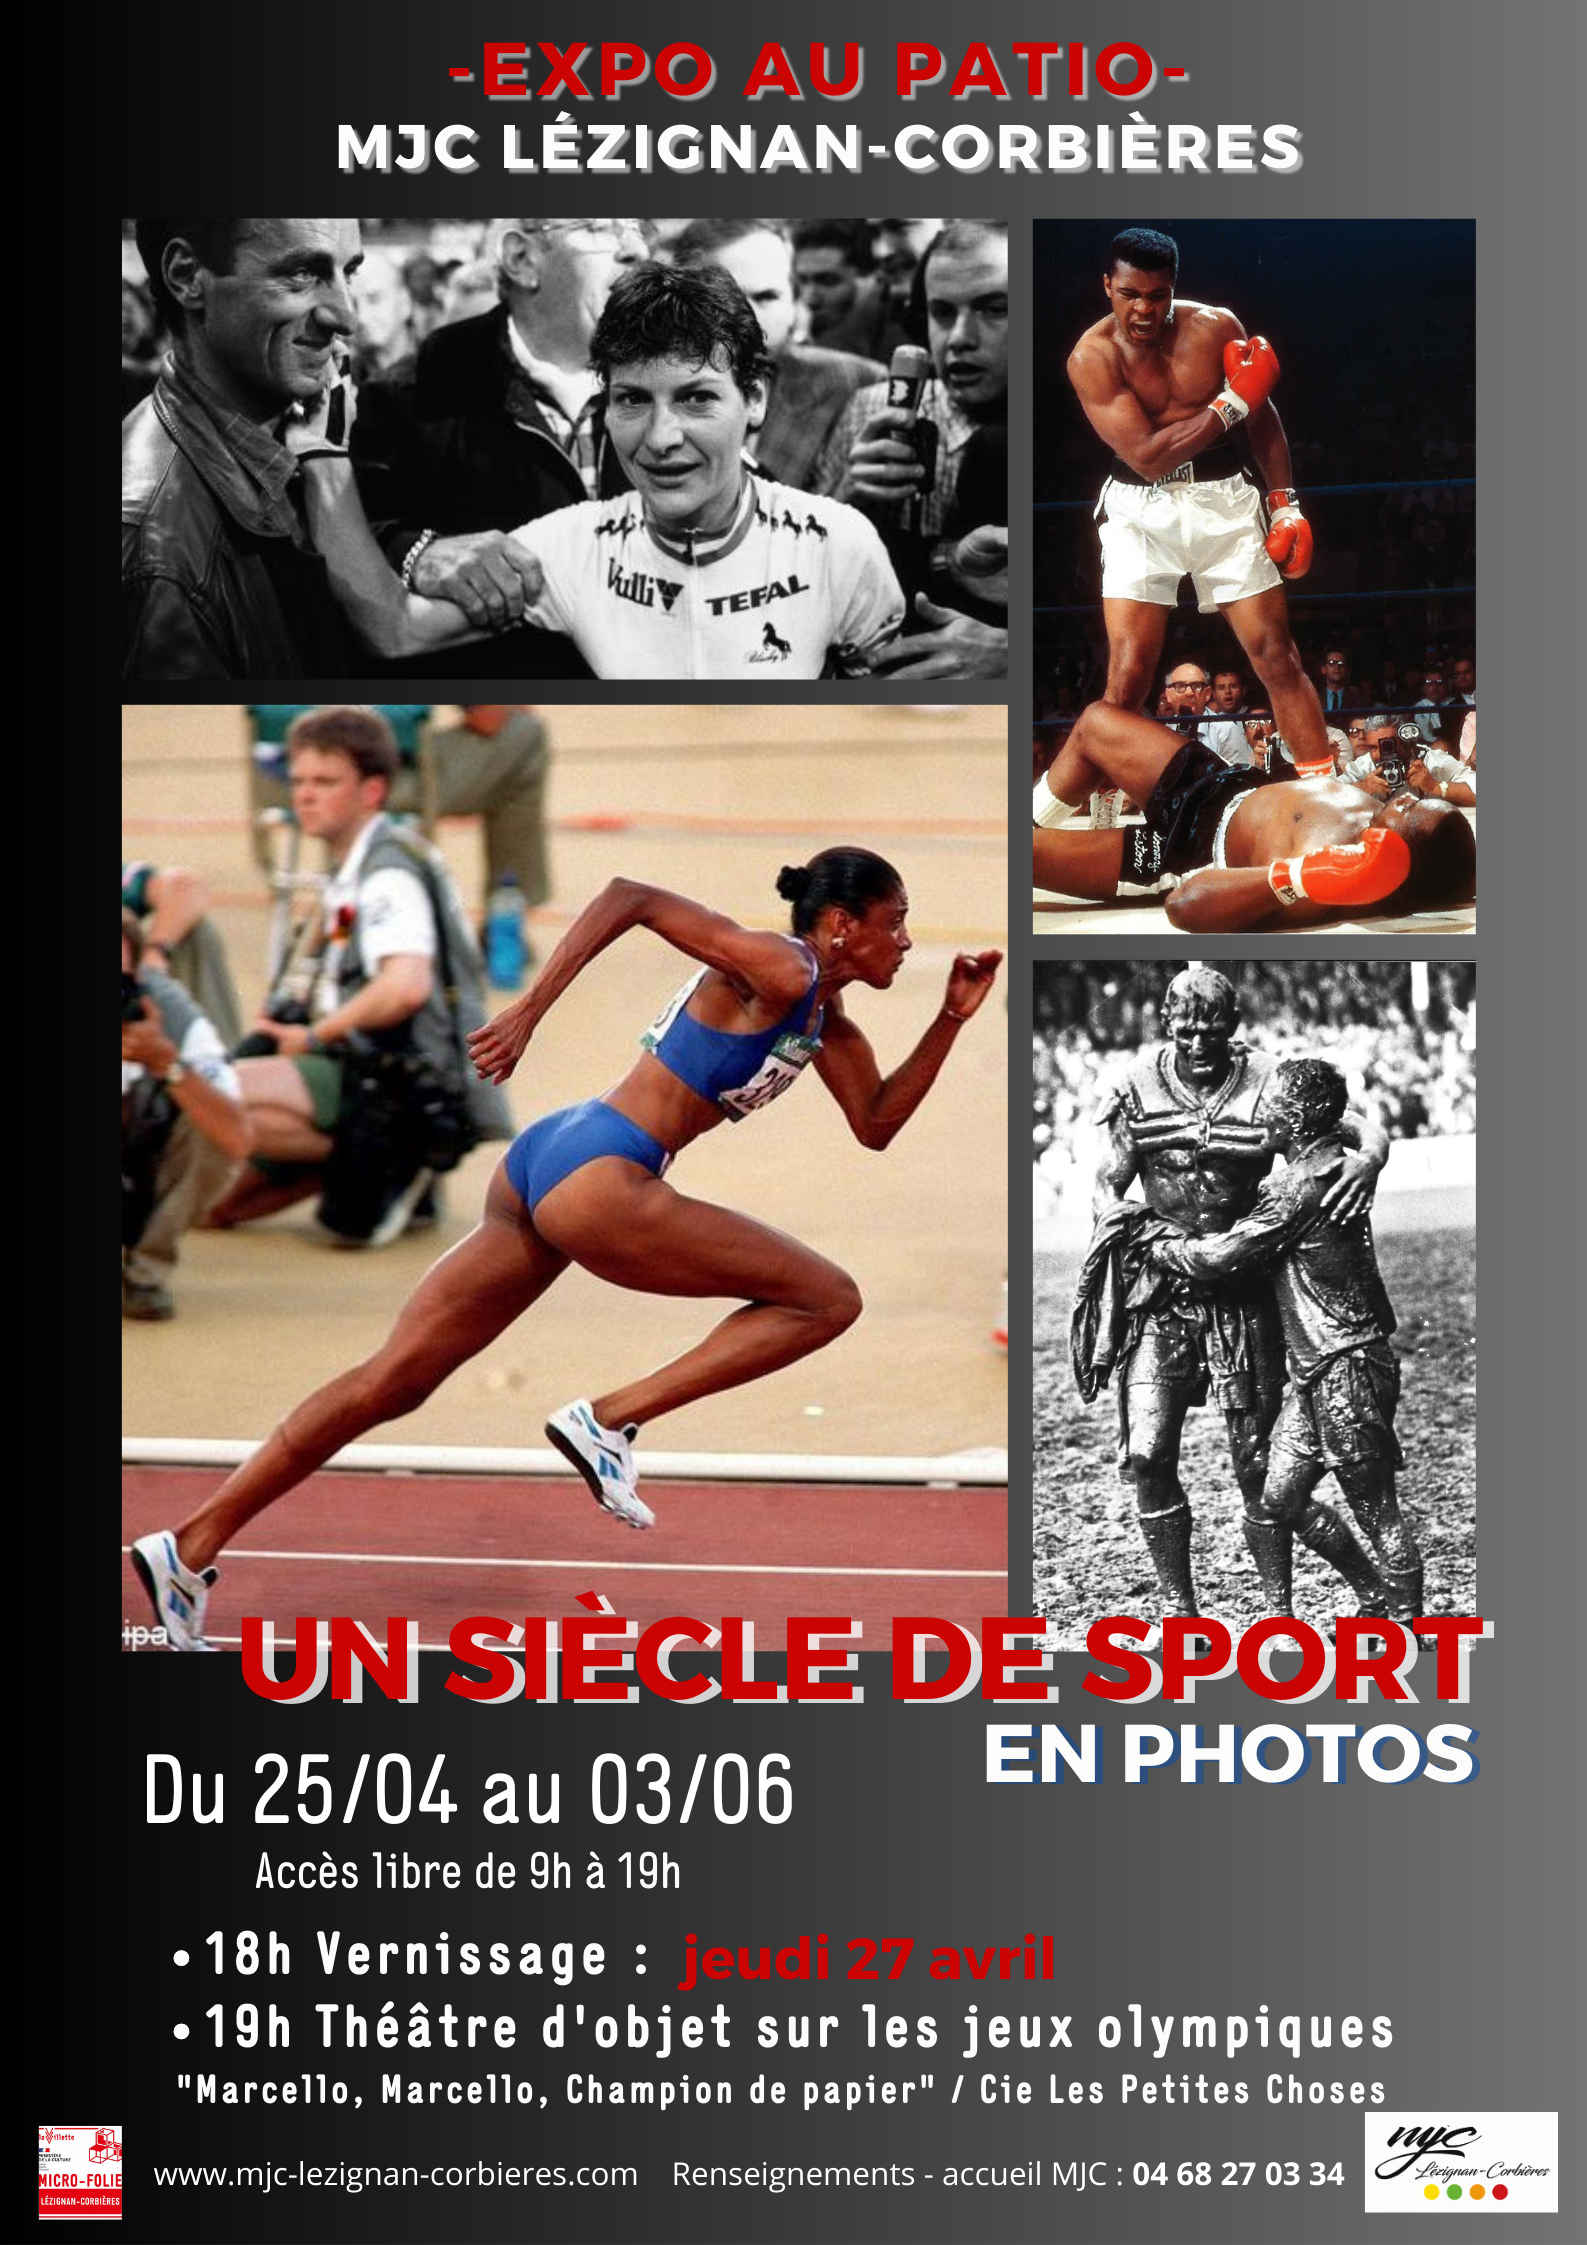 EXPO > "Un siècle de sport en photos"